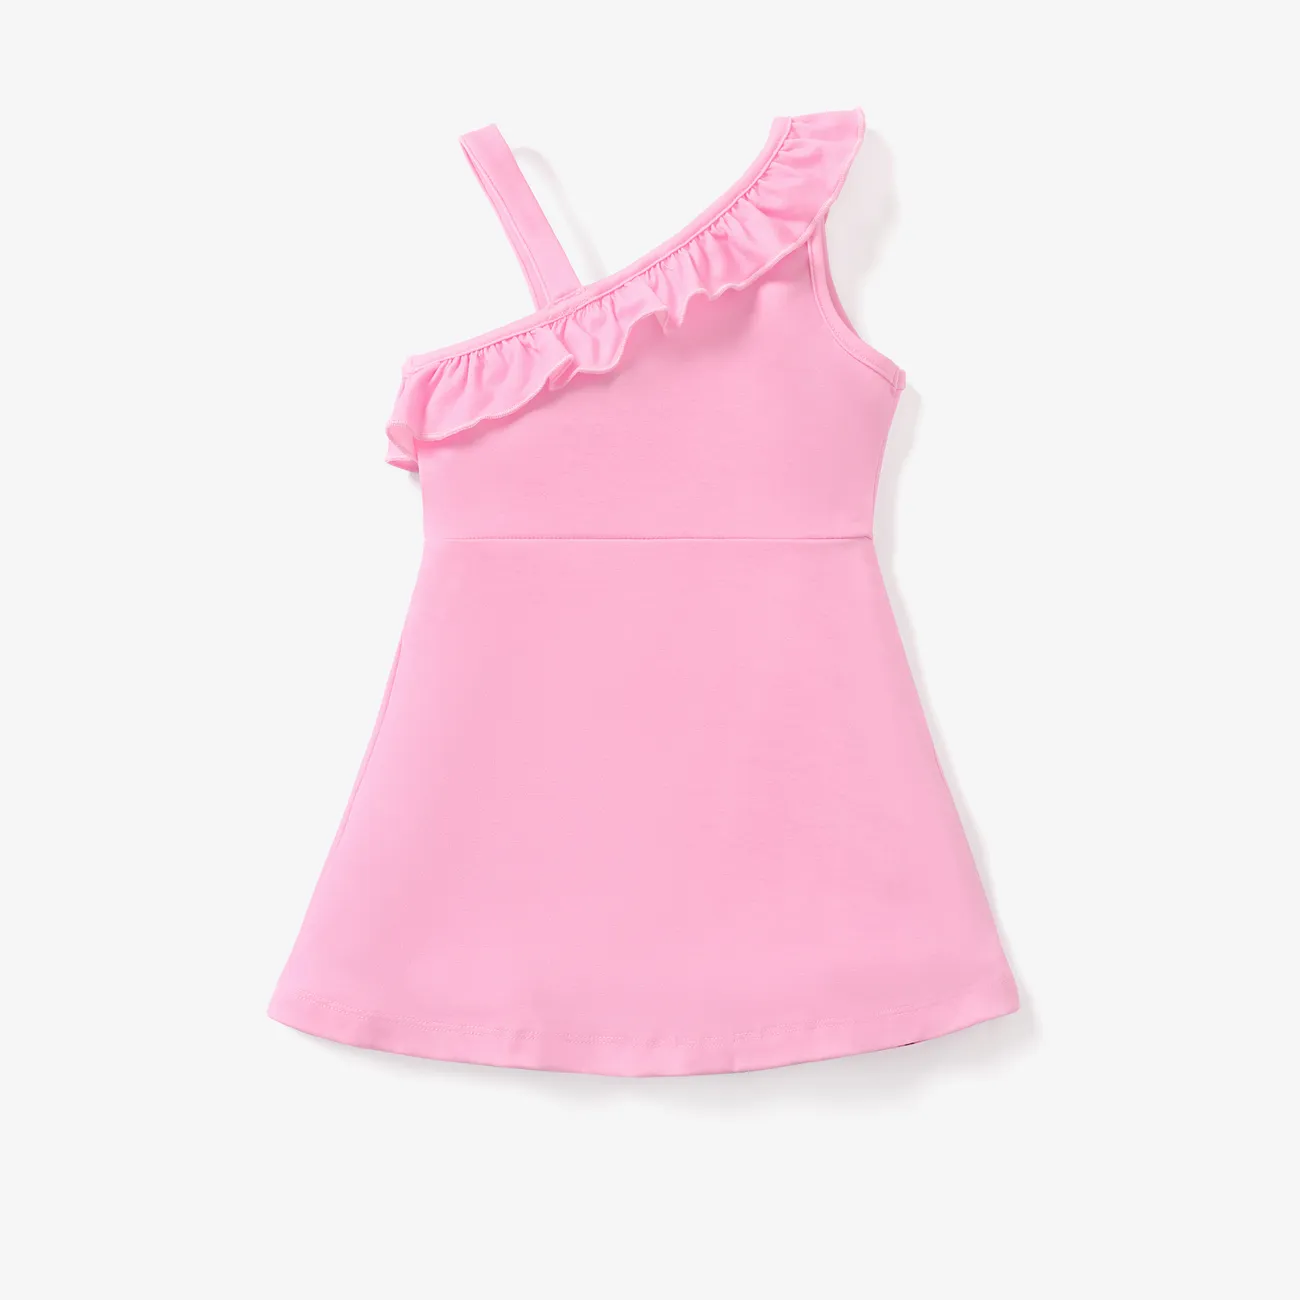 Disney Princess Toddler Girl's Off-shoulder Suspender Ruffled Waist Dress Pink big image 1